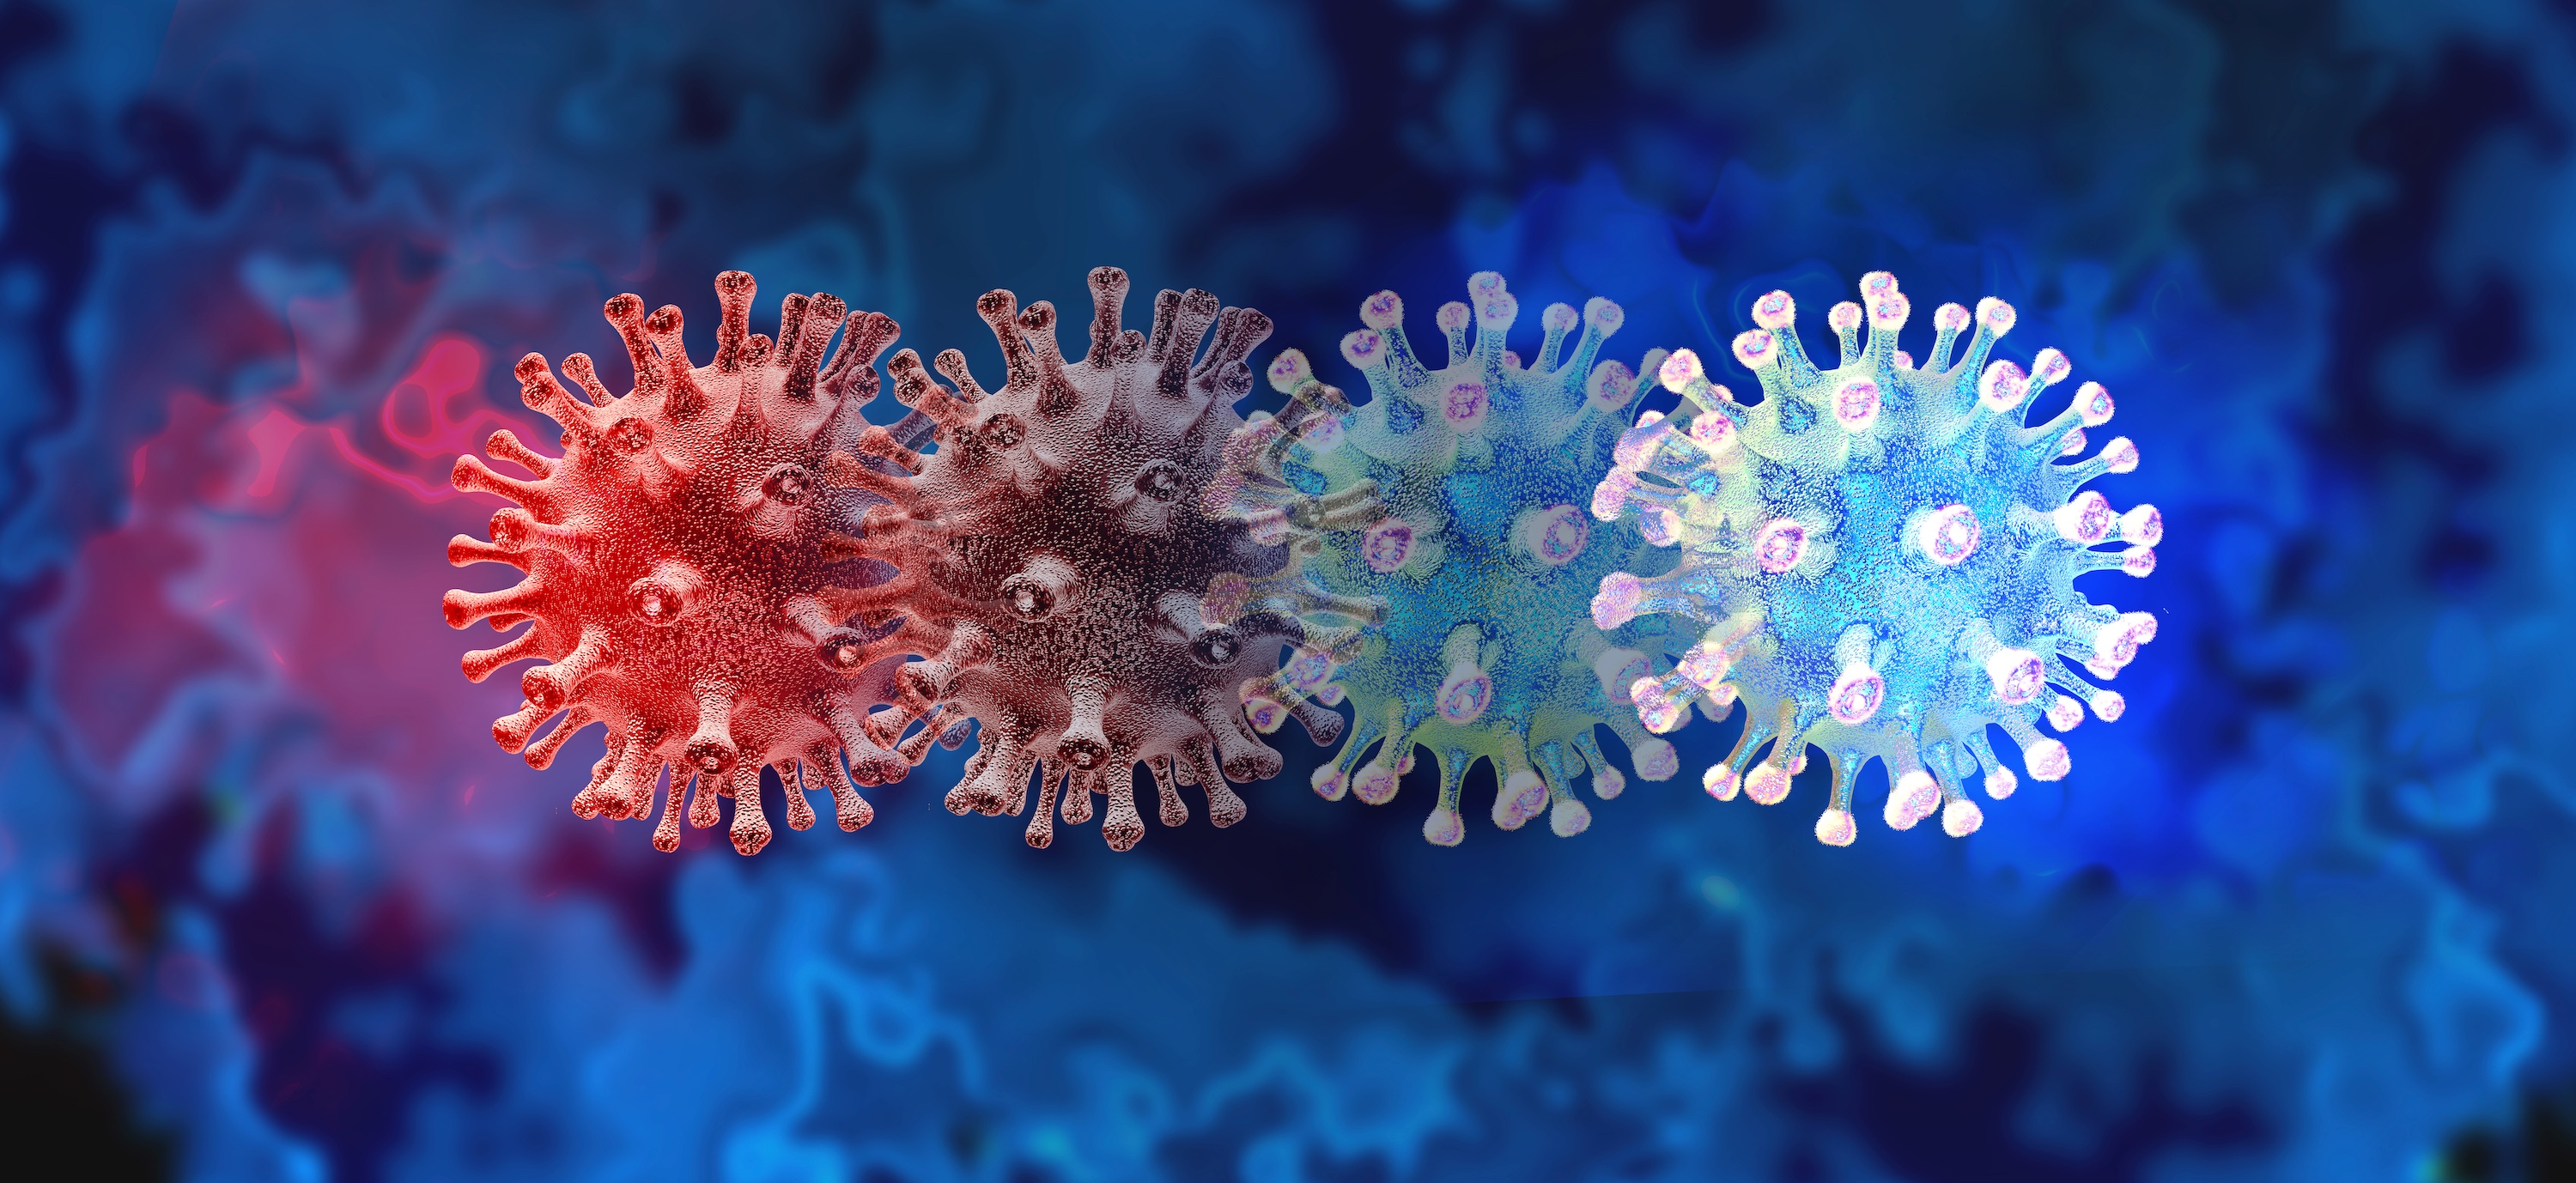 C.1.2 et Mu sont deux nouveaux variants du coronavirus sous surveillance. © freshidea, Adobe Stock